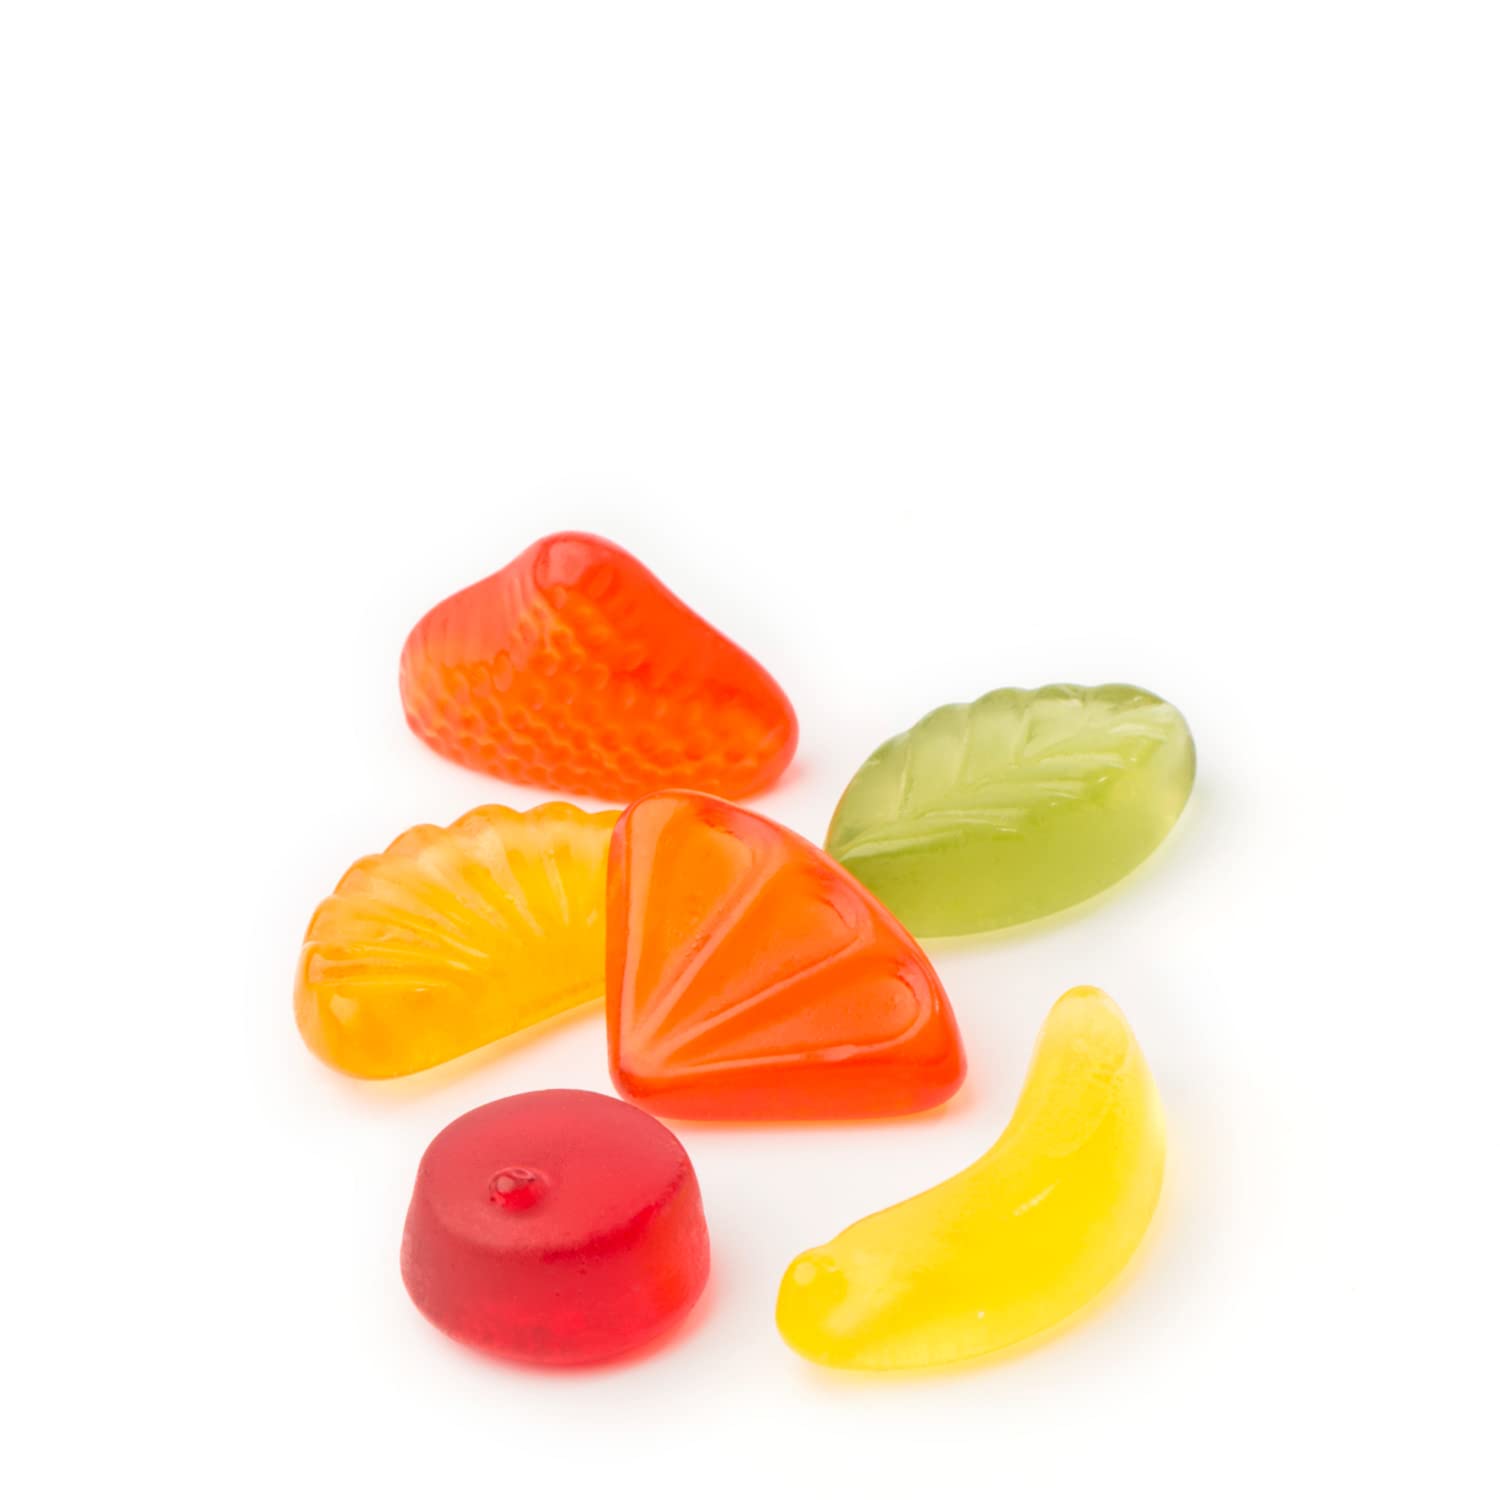 nimm2 Lachgummi – 1 x 376g Maxi Pack – Fruchtgummi mit Fruchtsaft und Vitaminen 